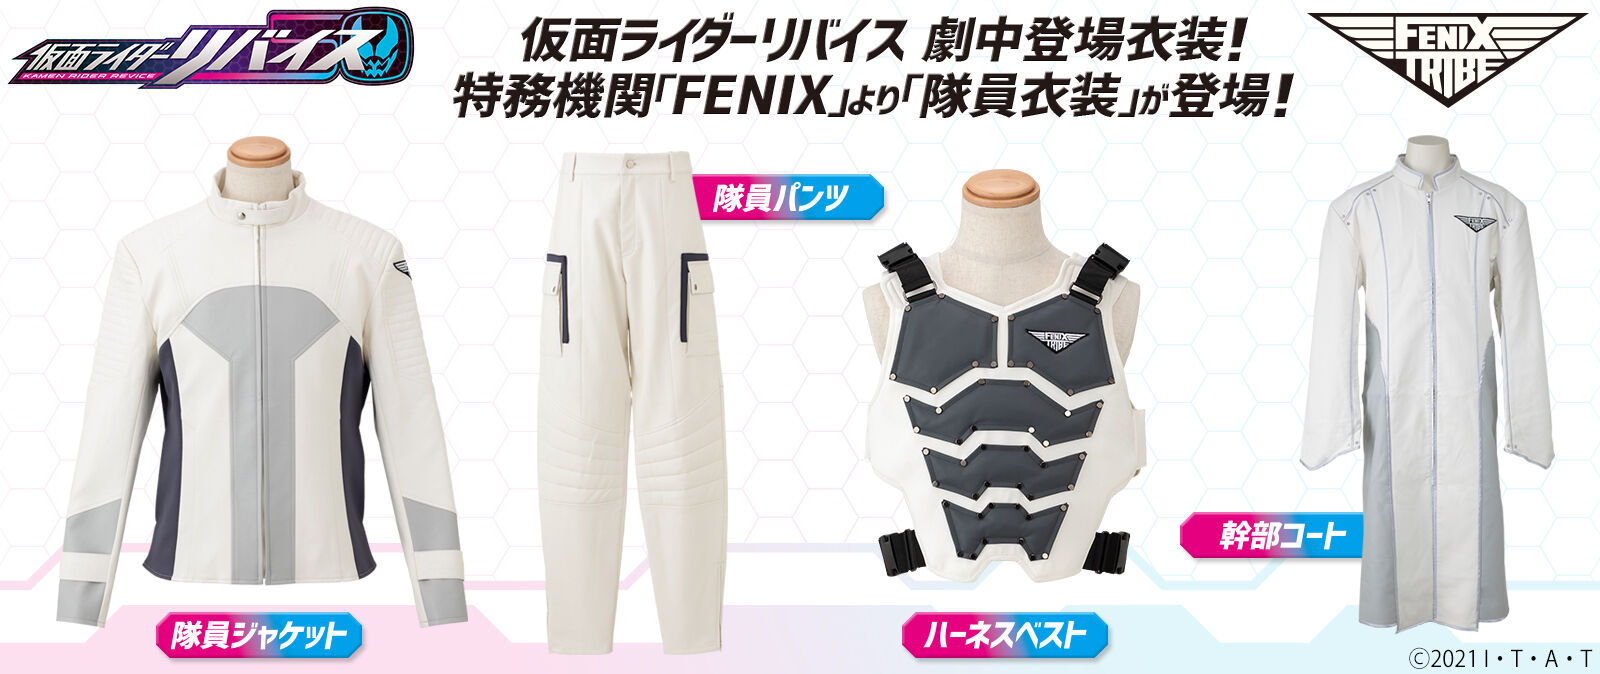 仮面ライダーリバイス FENIX TRIBE 幹部コート | 仮面ライダーシリーズ 